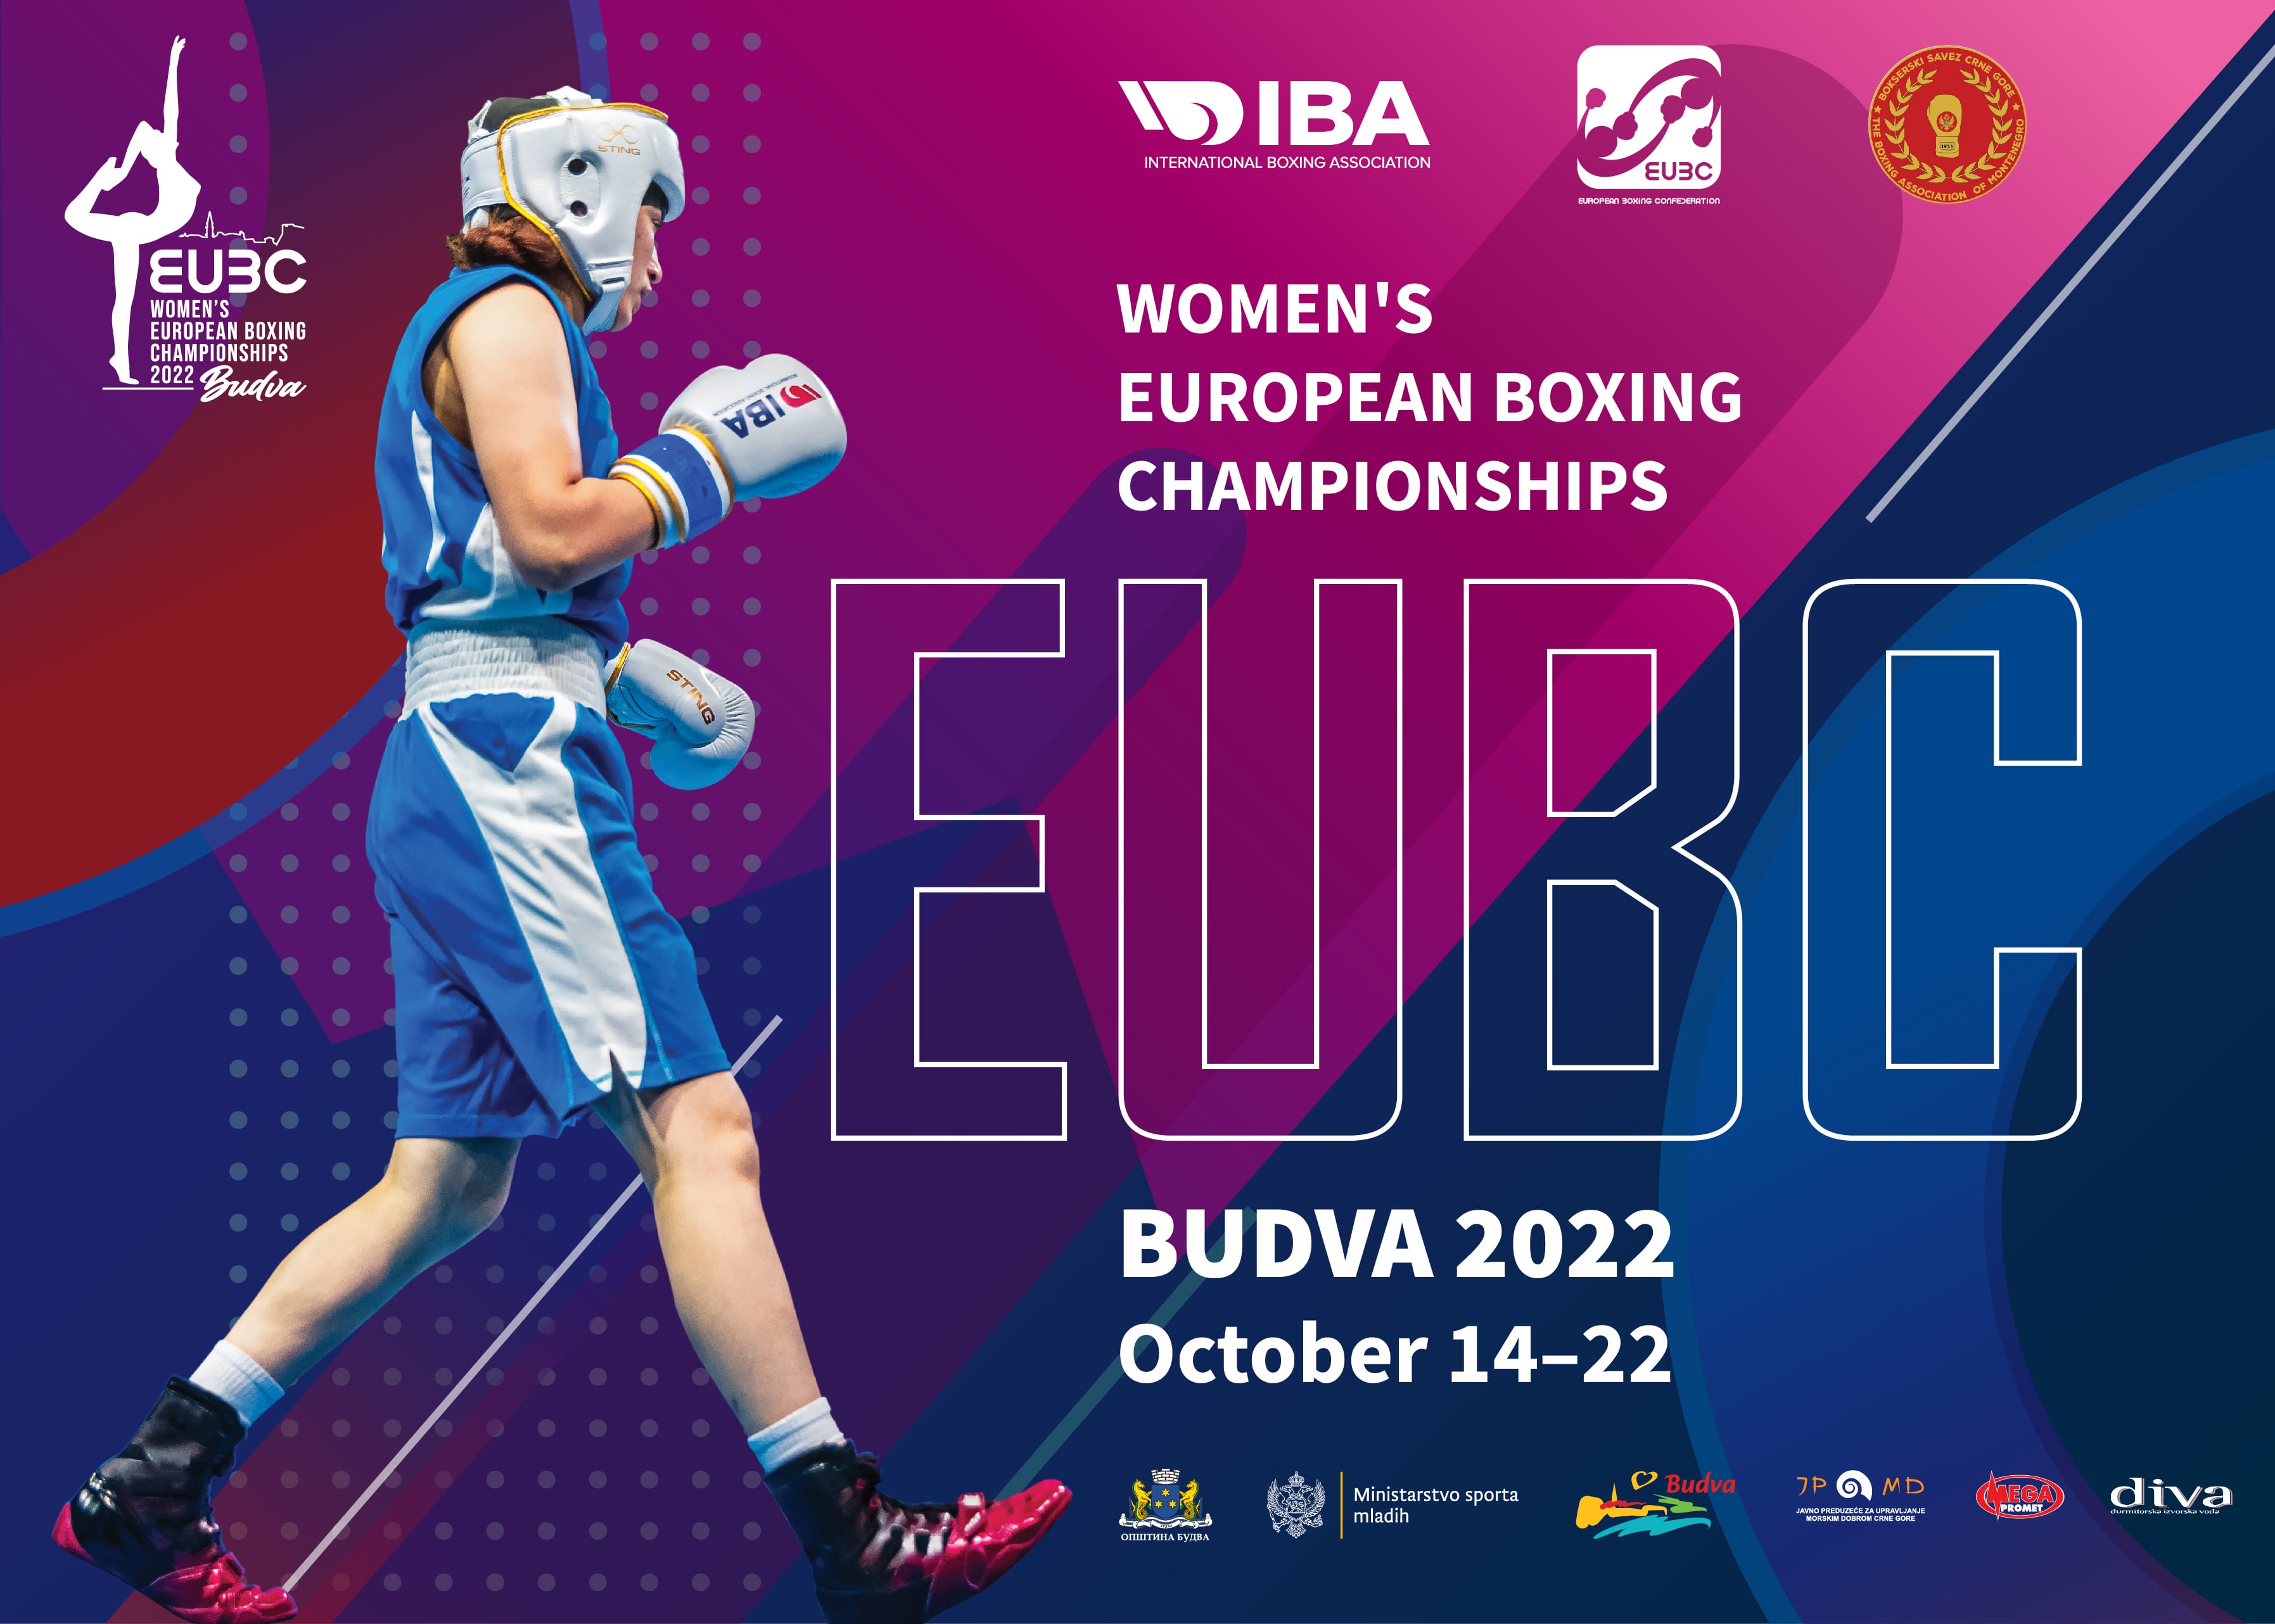 Spalio 14 d. Juodkalnijoje prasideda EUBC Europos moterų bokso čempionatas – IBA